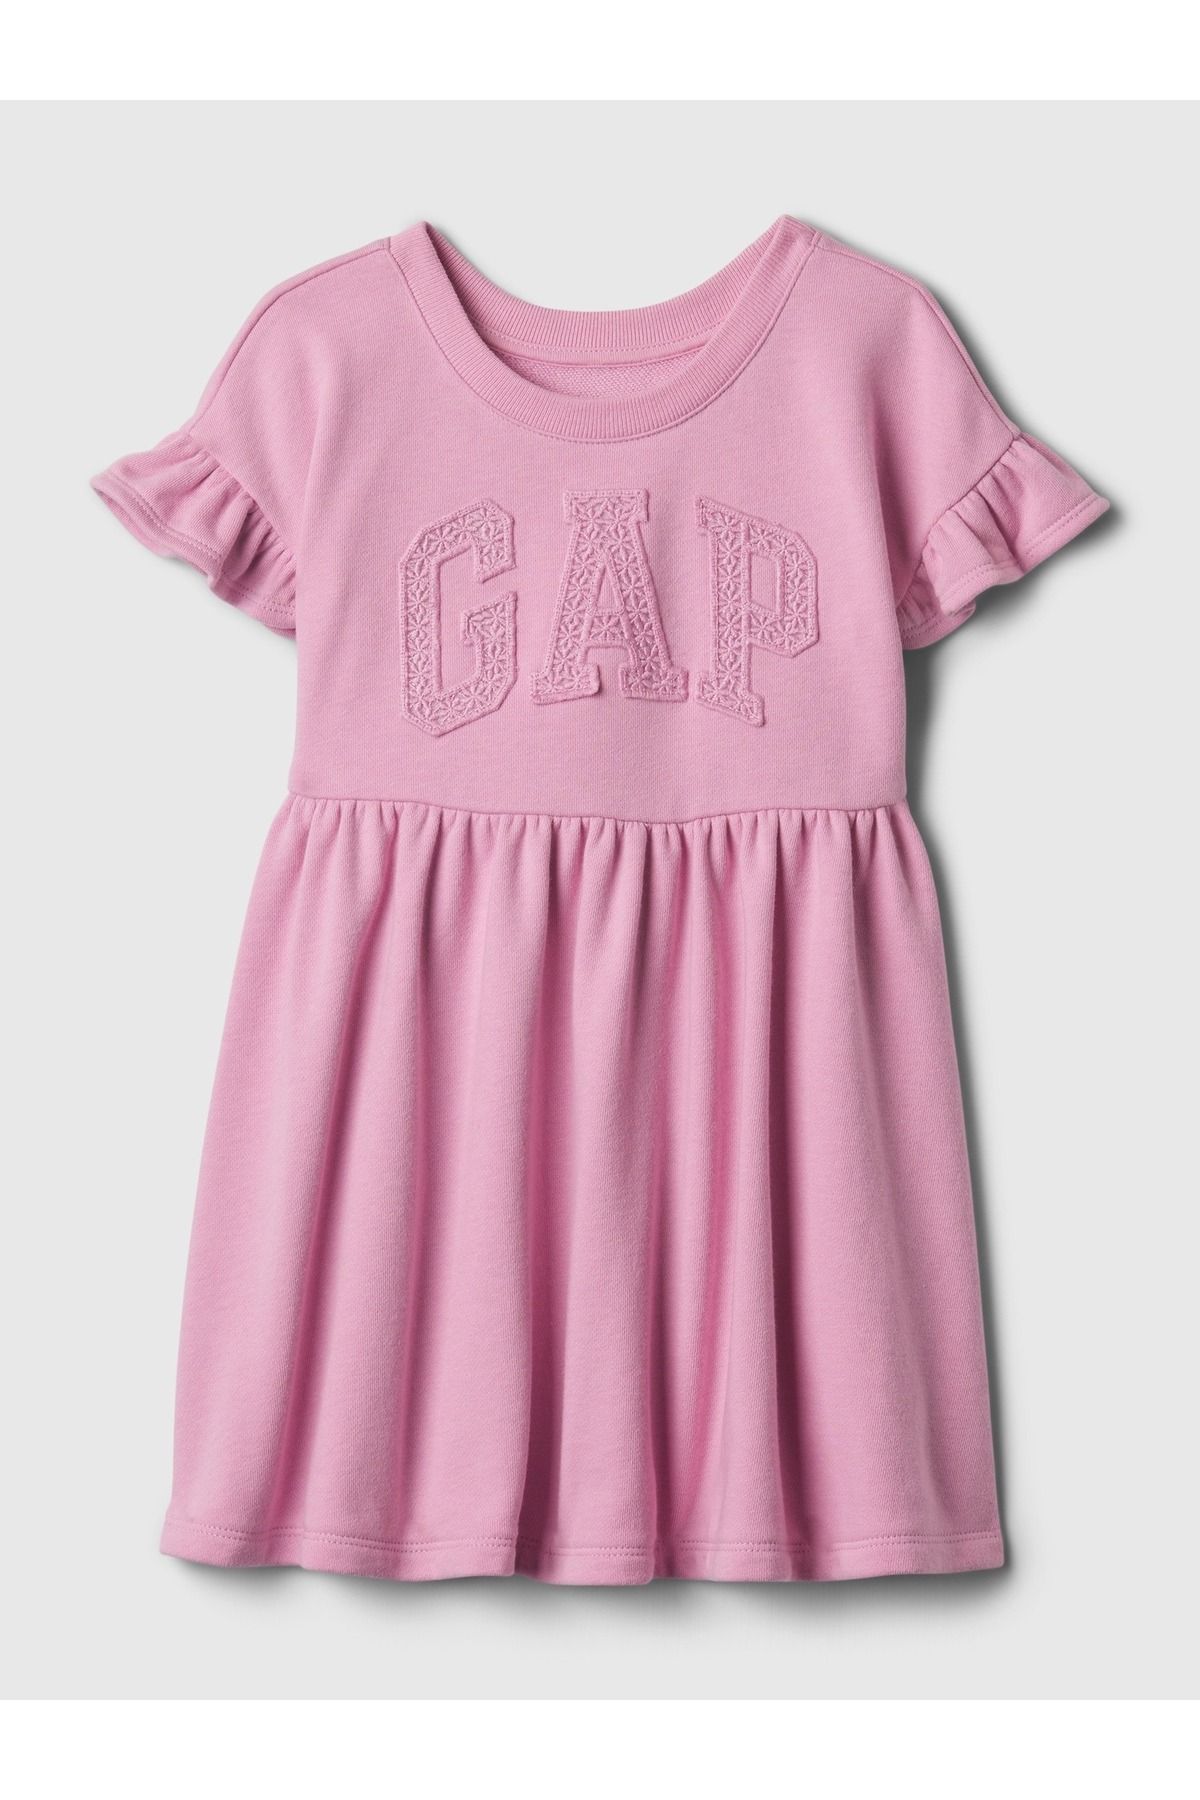 GAP Kız Bebek Pembe Gap Logo Sweatshirt Elbise